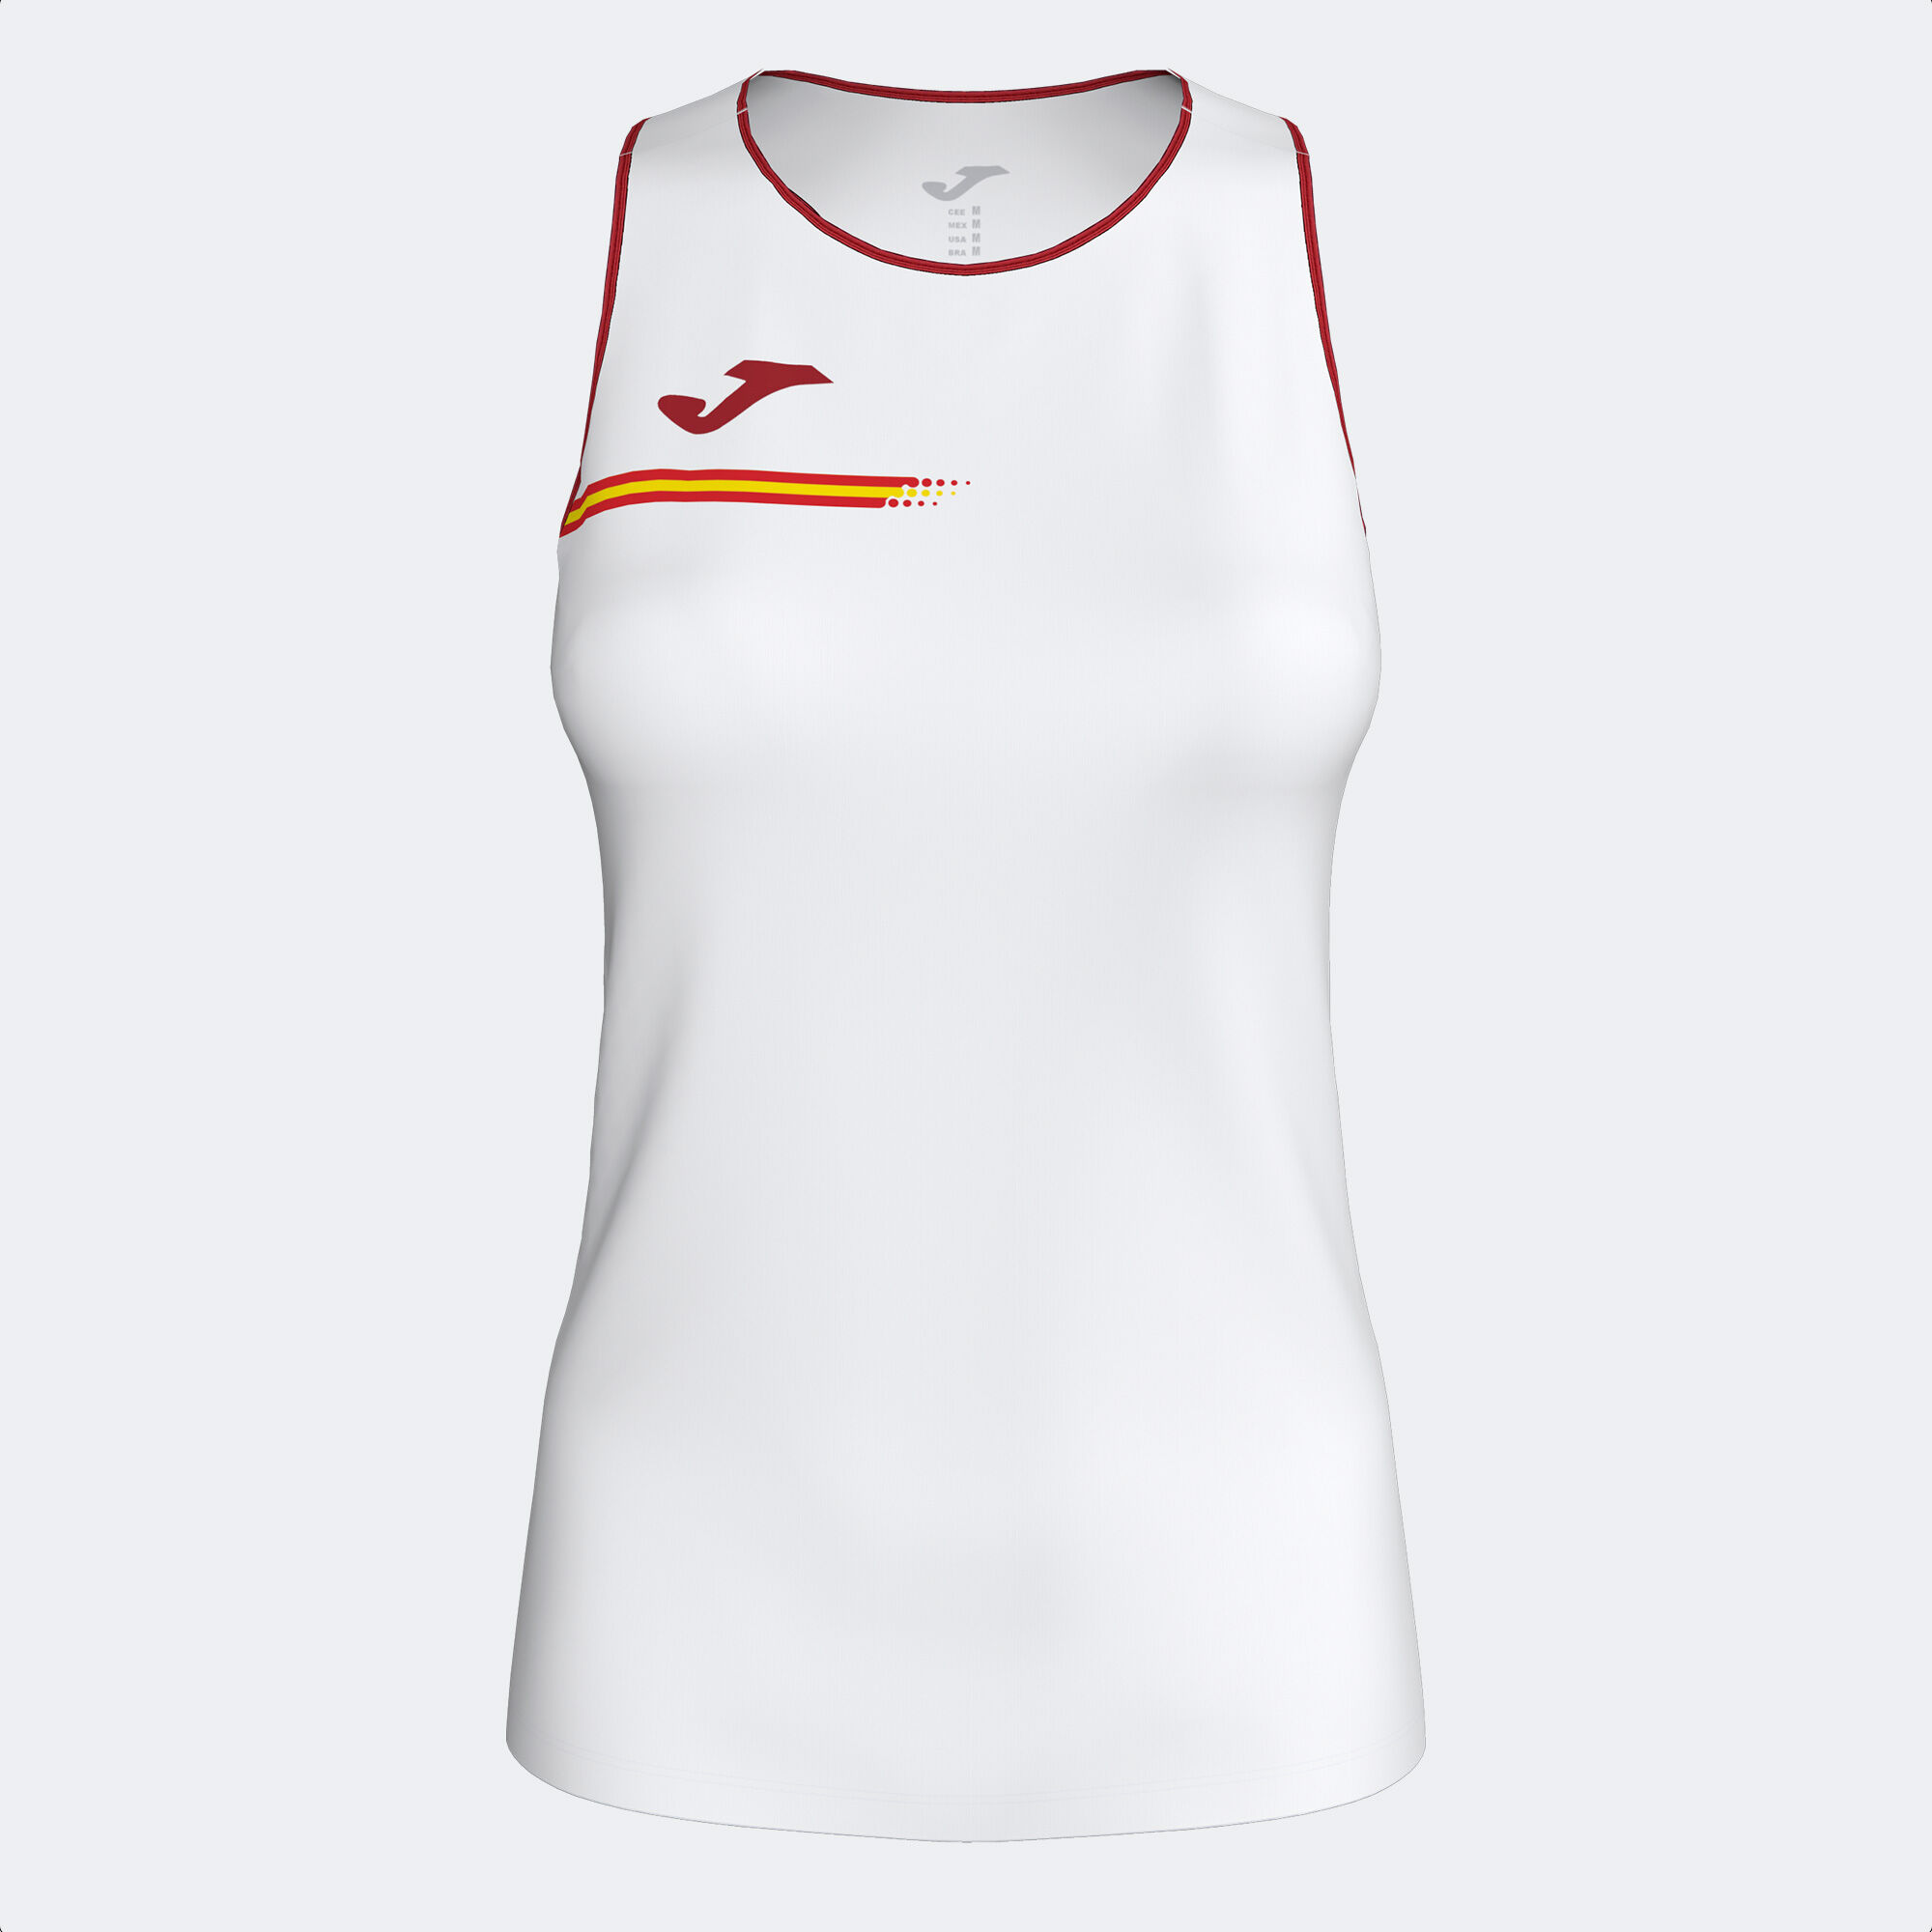 Camiseta tirantes Real Federación Española Tenis mujer